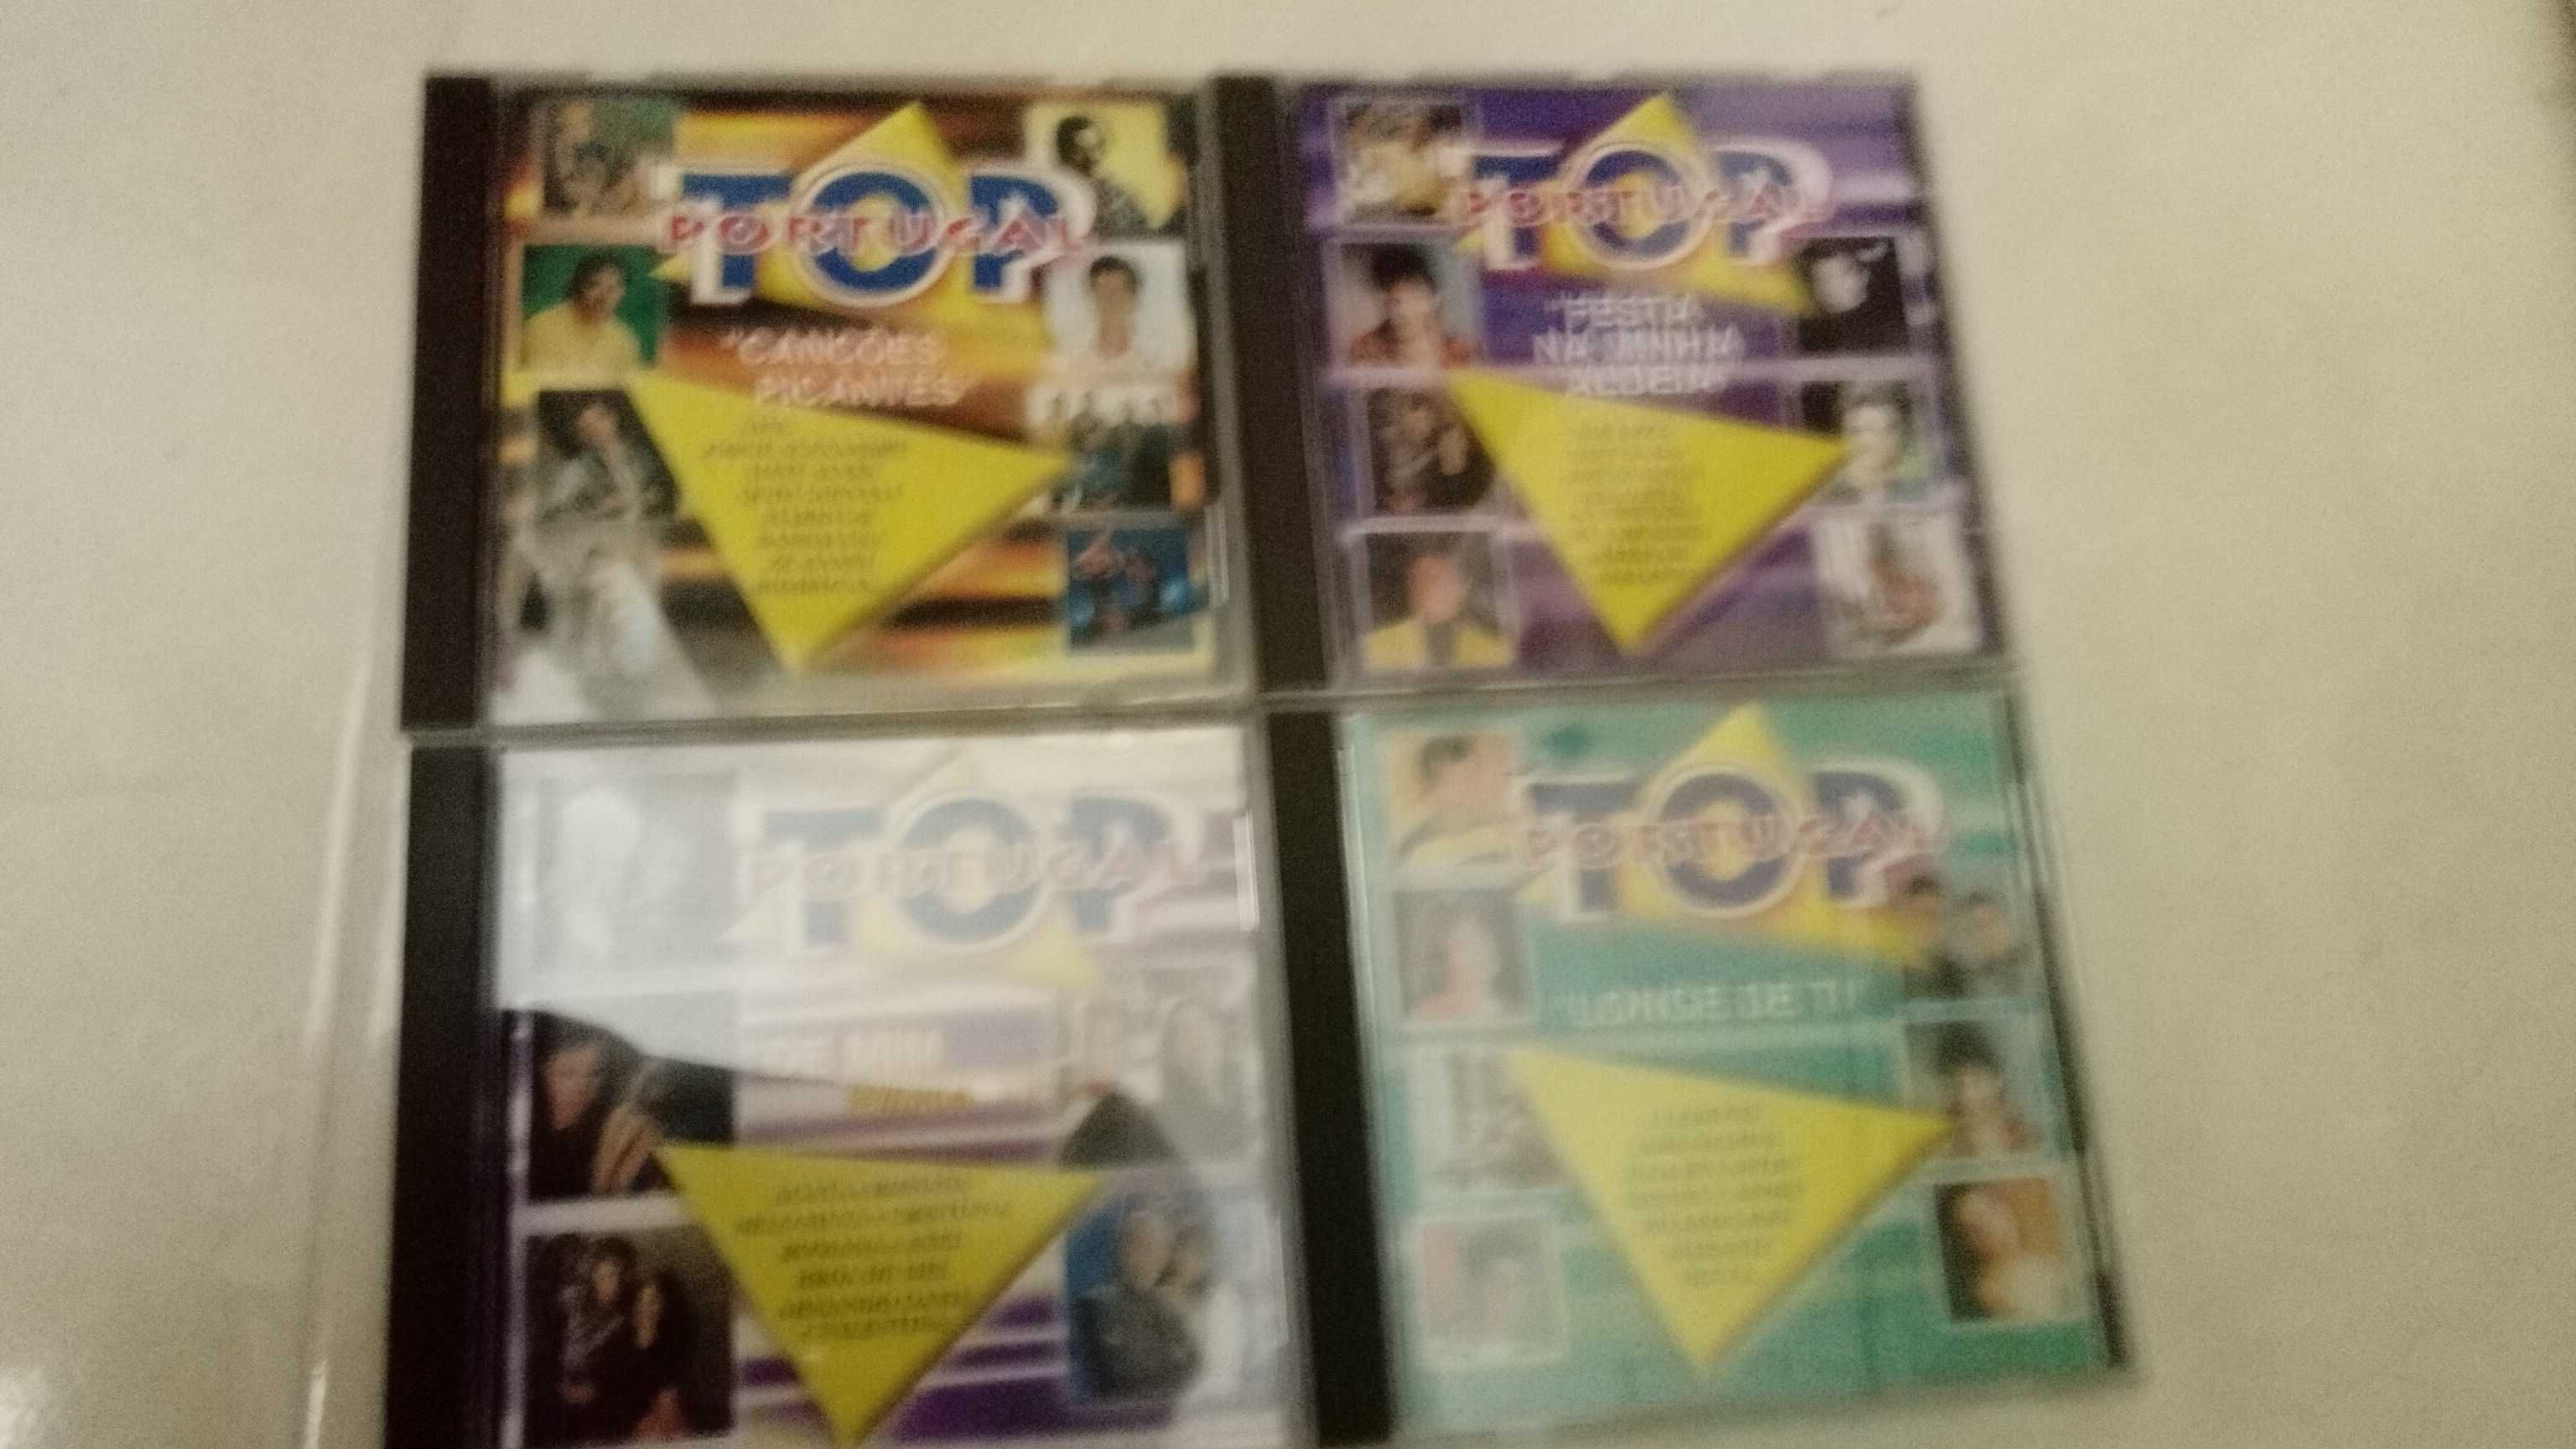 cd musica Tony carreira,top portugal, f.c.porto e vários